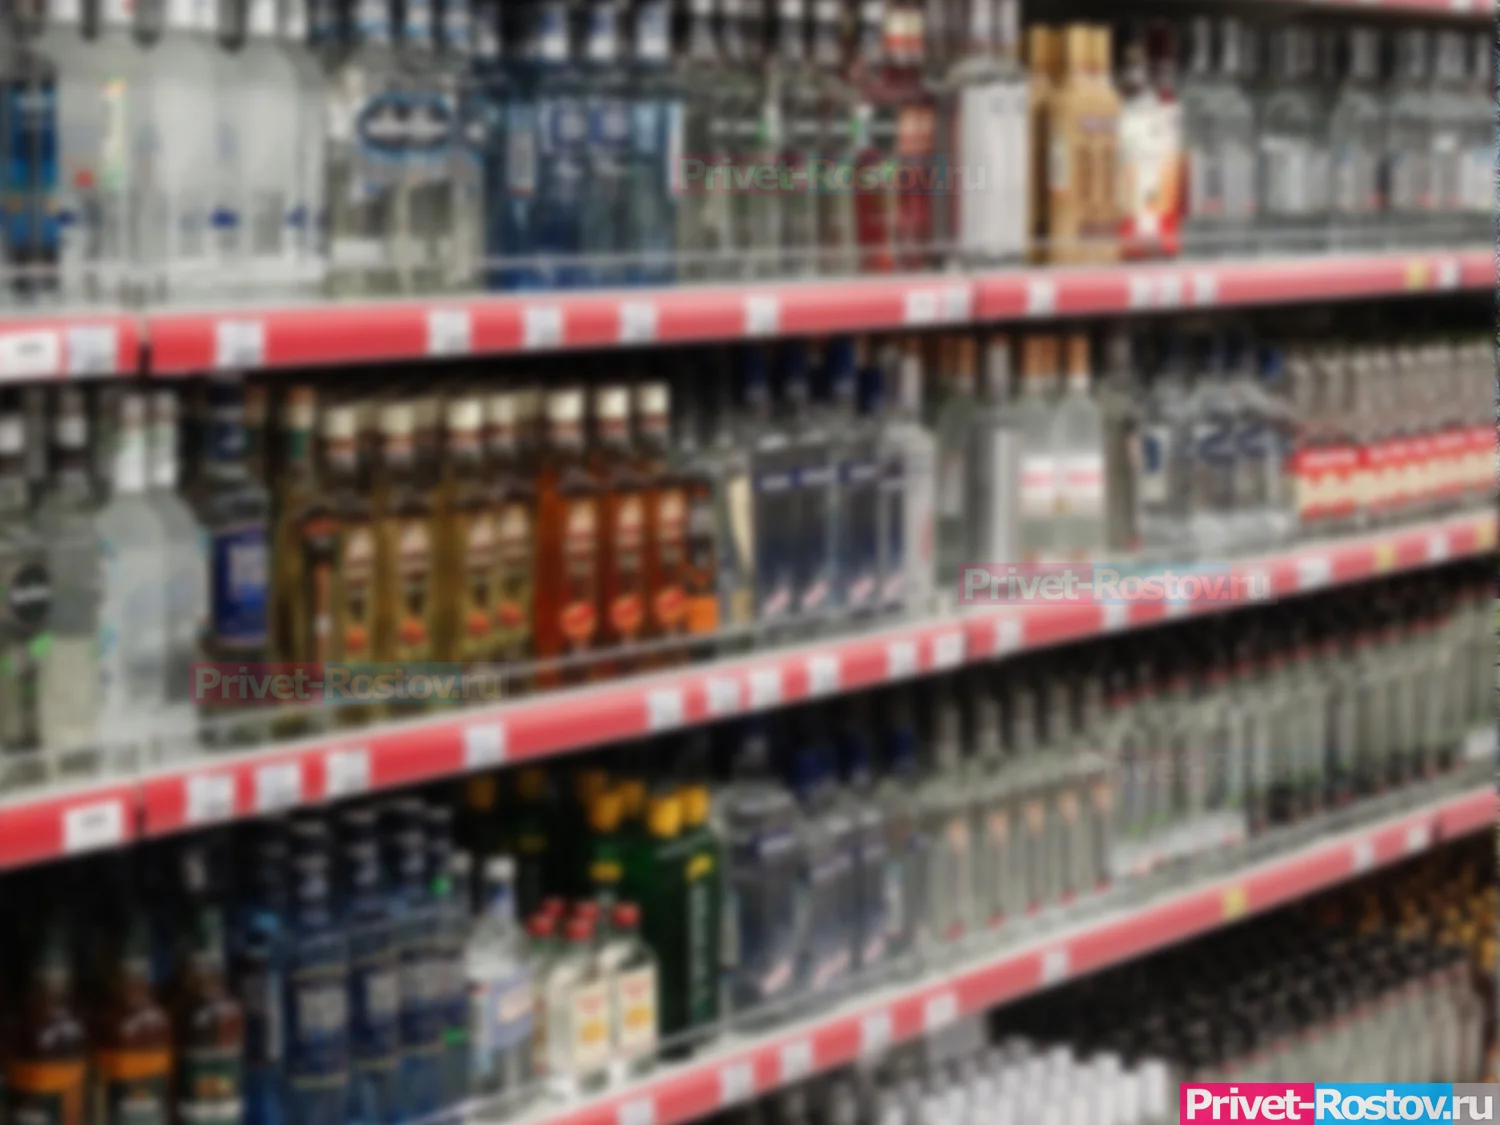 Продажа алкоголя в Ростовской области 1 сентября будет ограничена